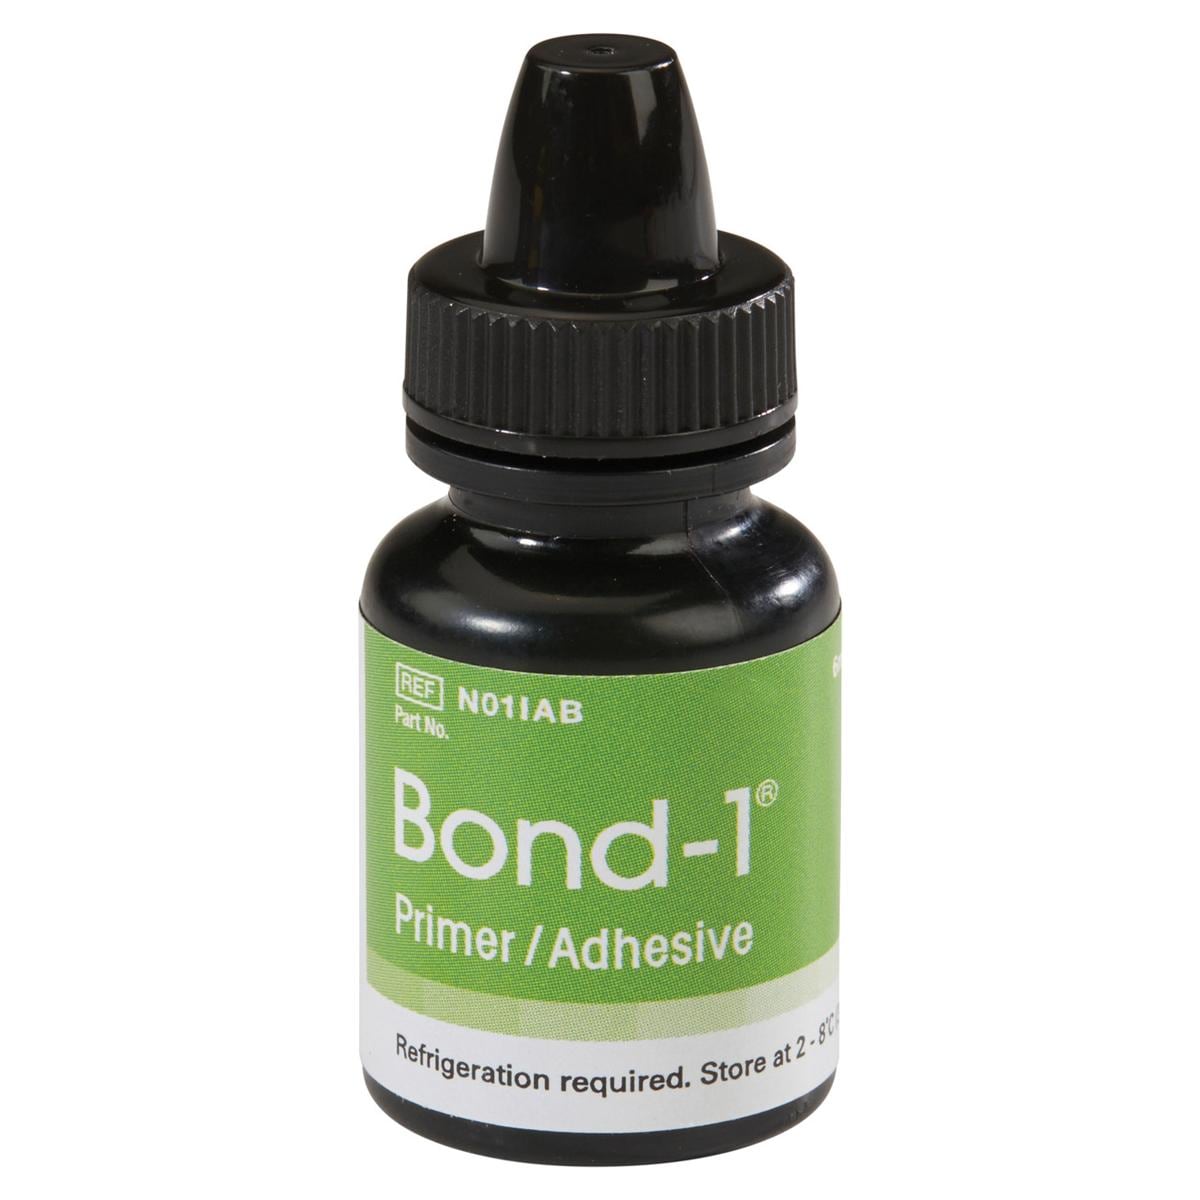 Bond-1 Primer / adhsif - NO1IAB, flacon 6 ml